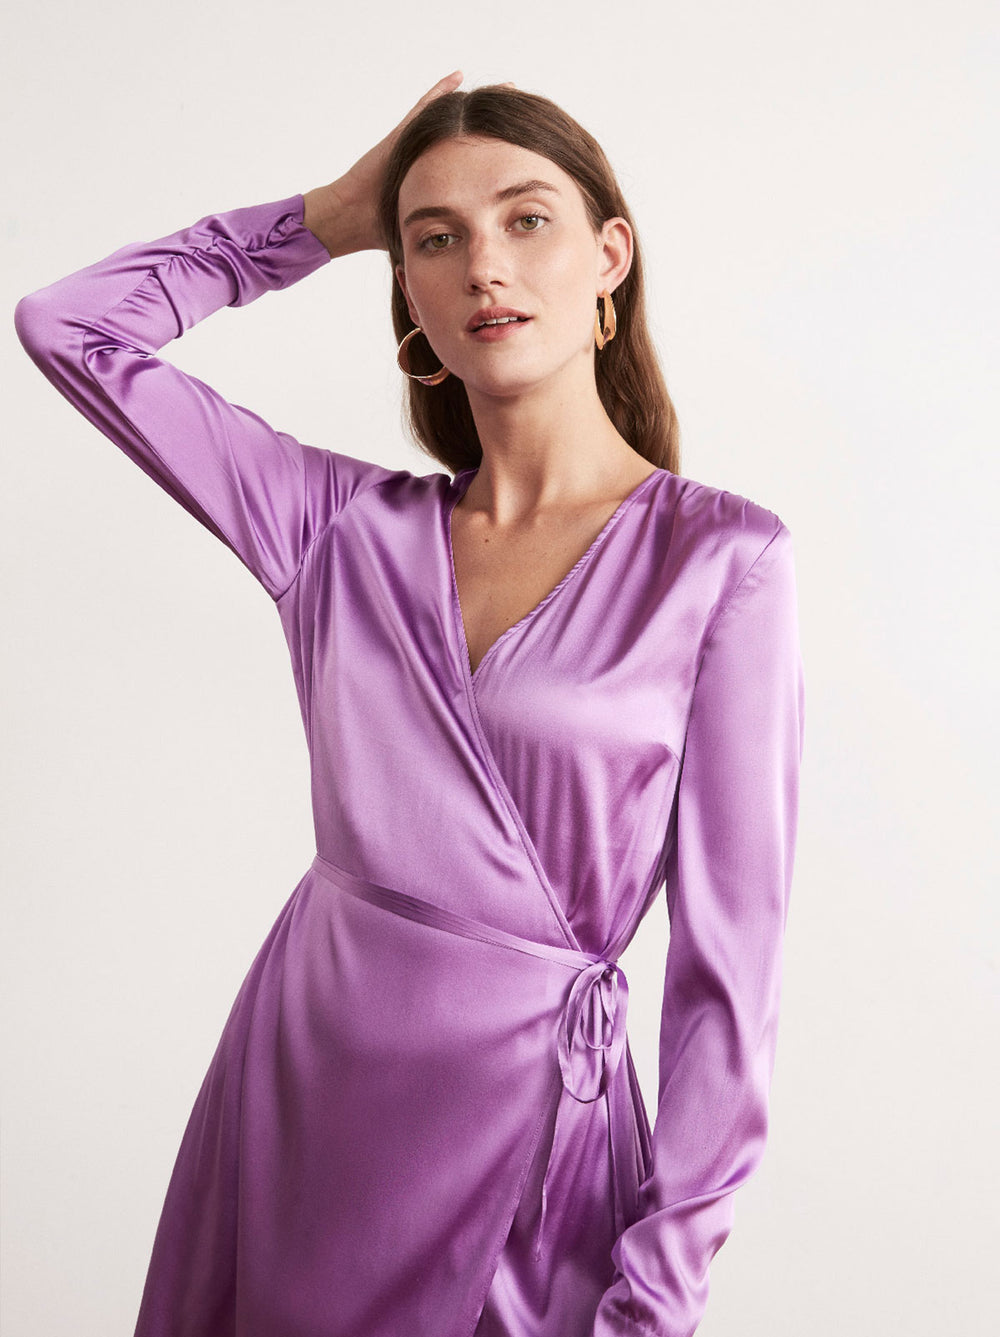 purple wrap dress long sleeve